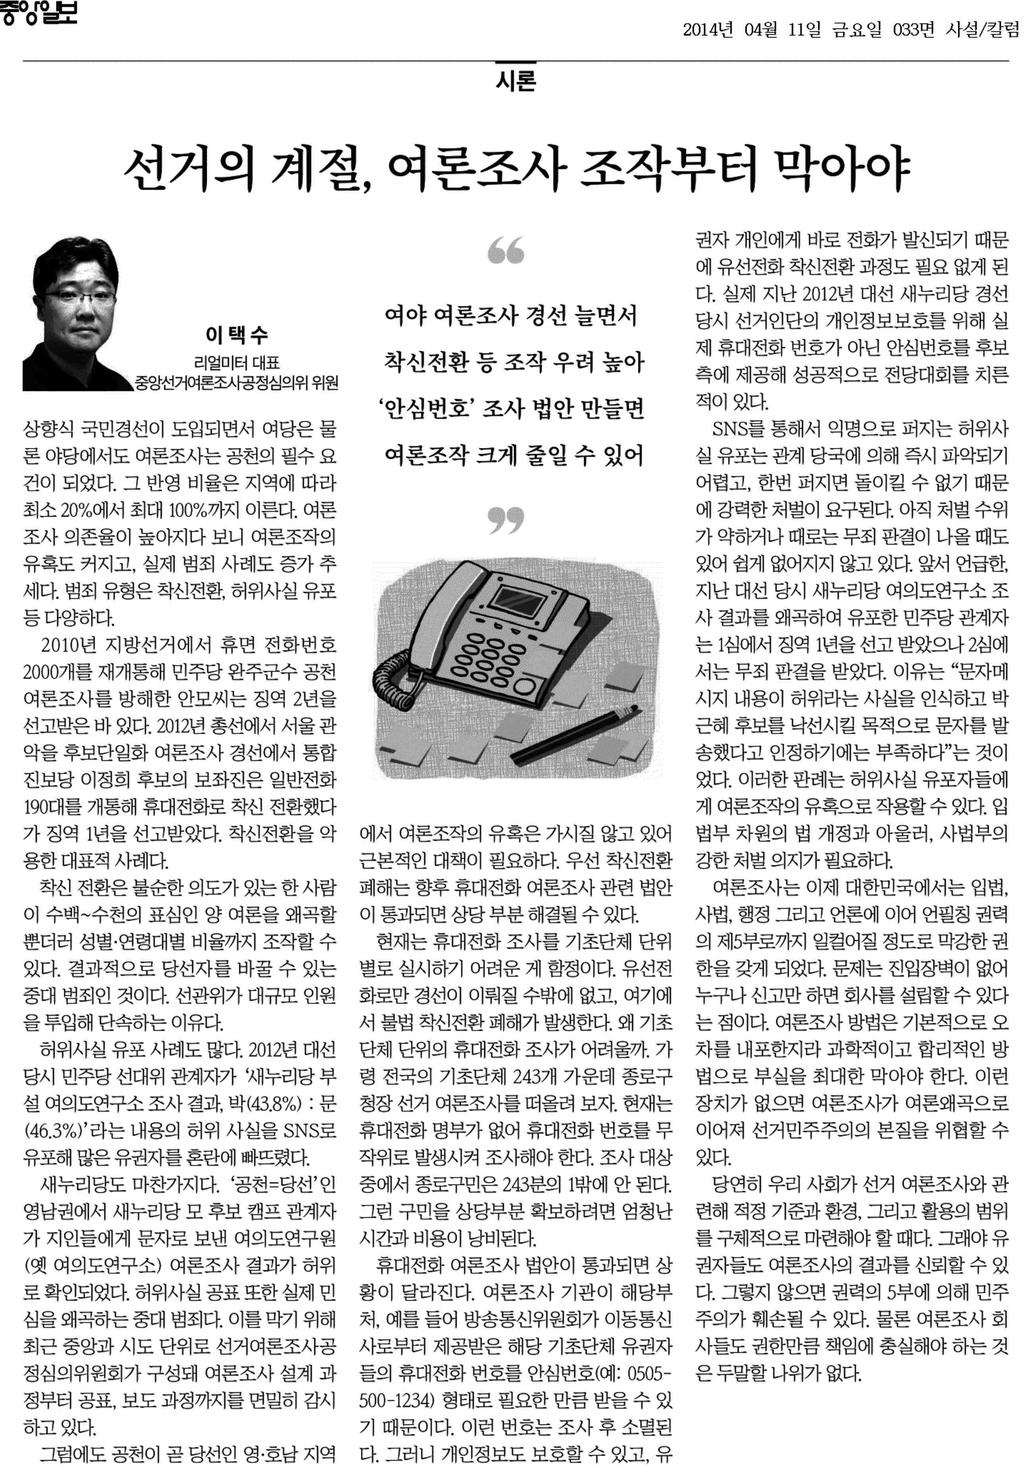 이택수중앙심의위원위원기고 ( 중앙일보, 2014. 4. 11.